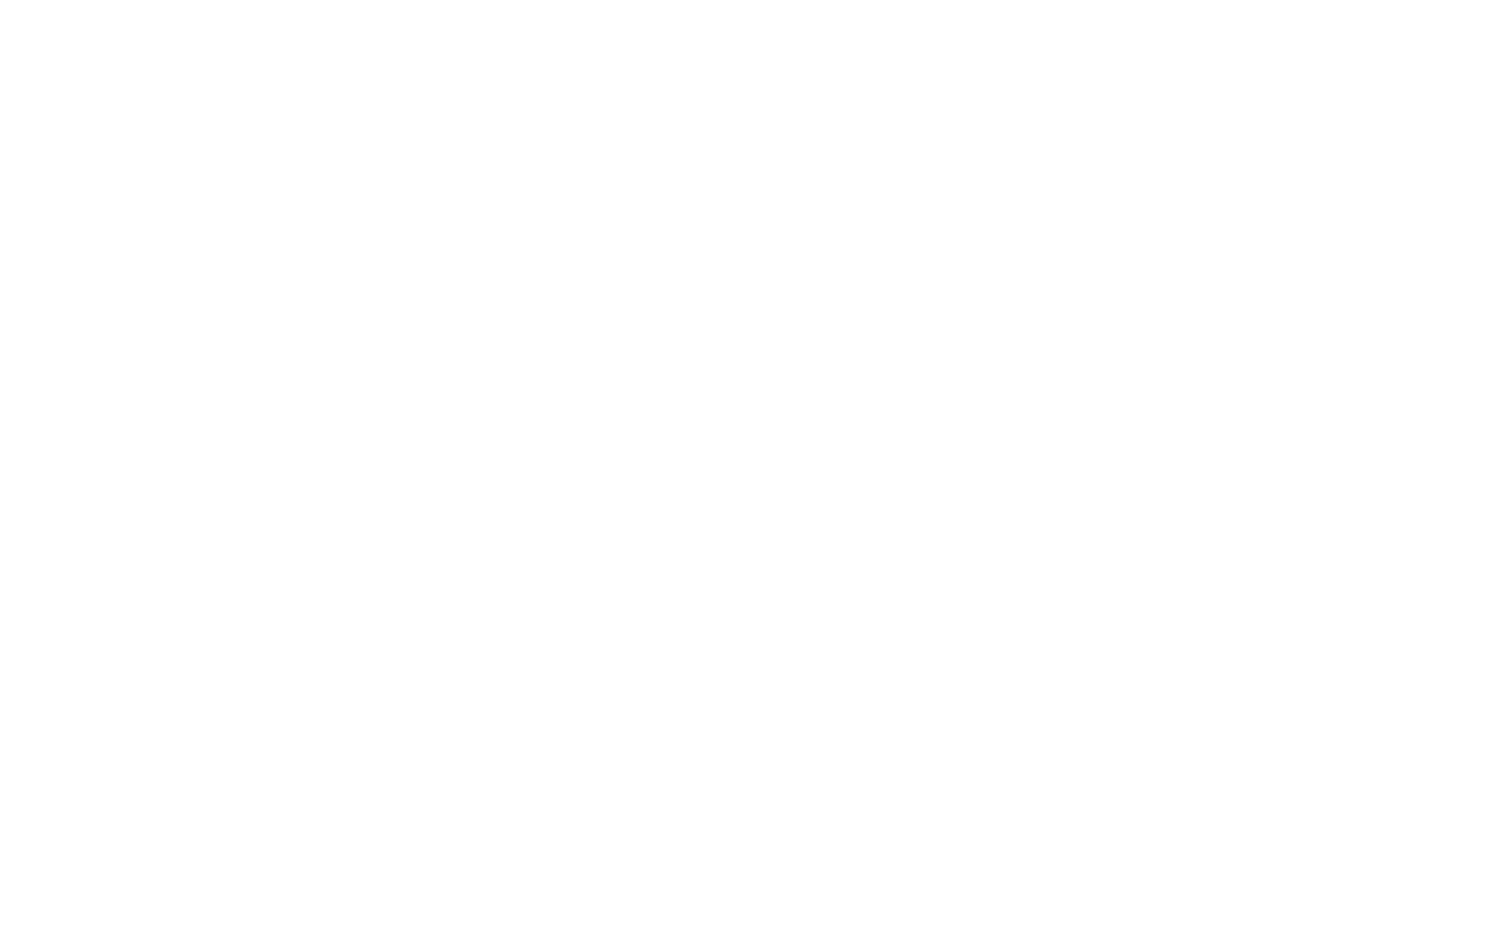 NOVA ELECTRIC LLC